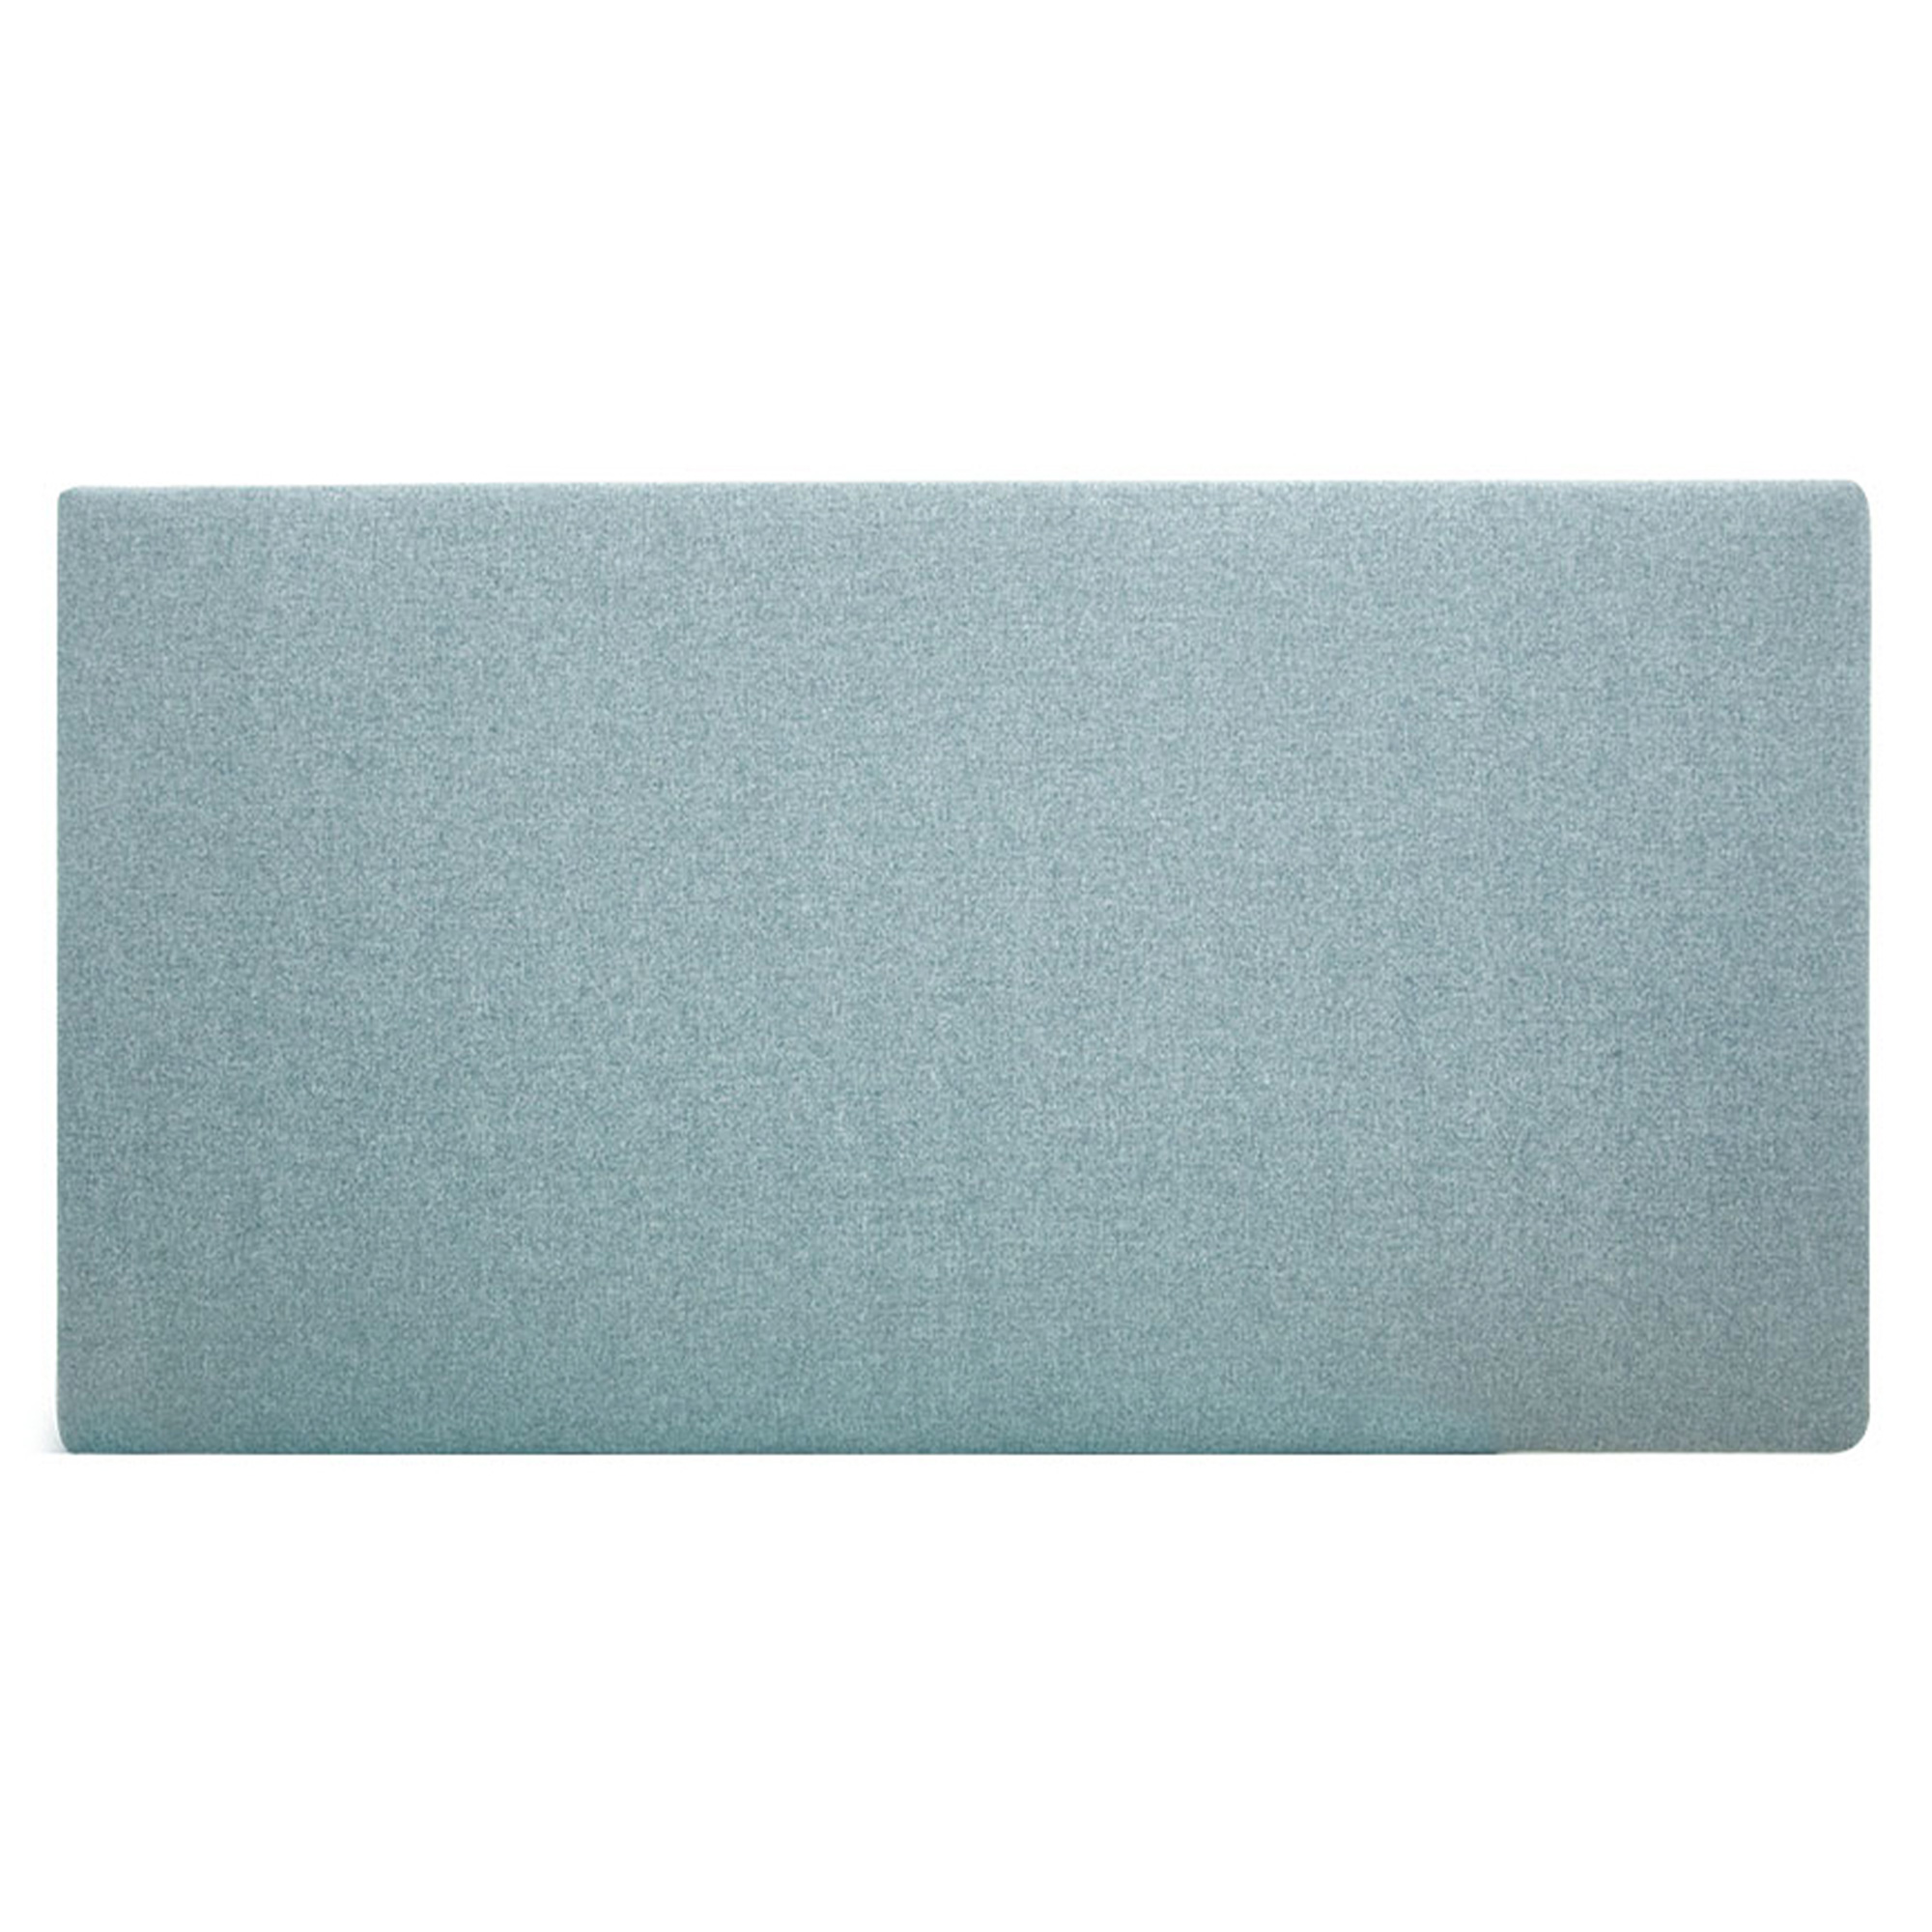 Tête de lit polyester lisse couleur bleu-verte 90x80cm